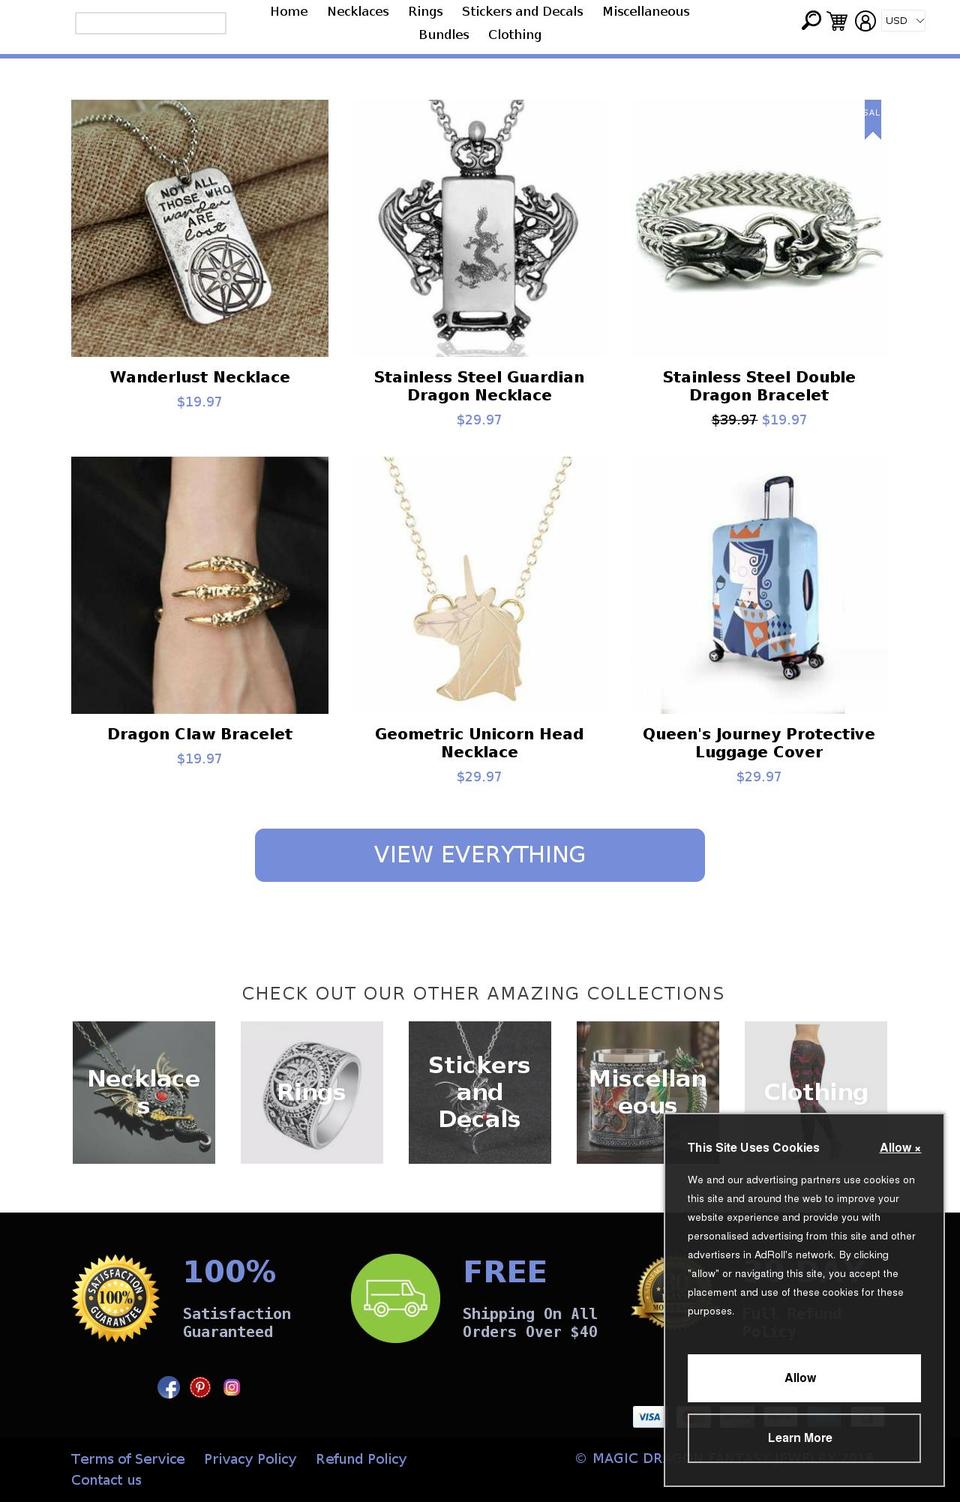 ecom-turbo-v2-7 Shopify theme site example magicdragonfantasyjewelry.com